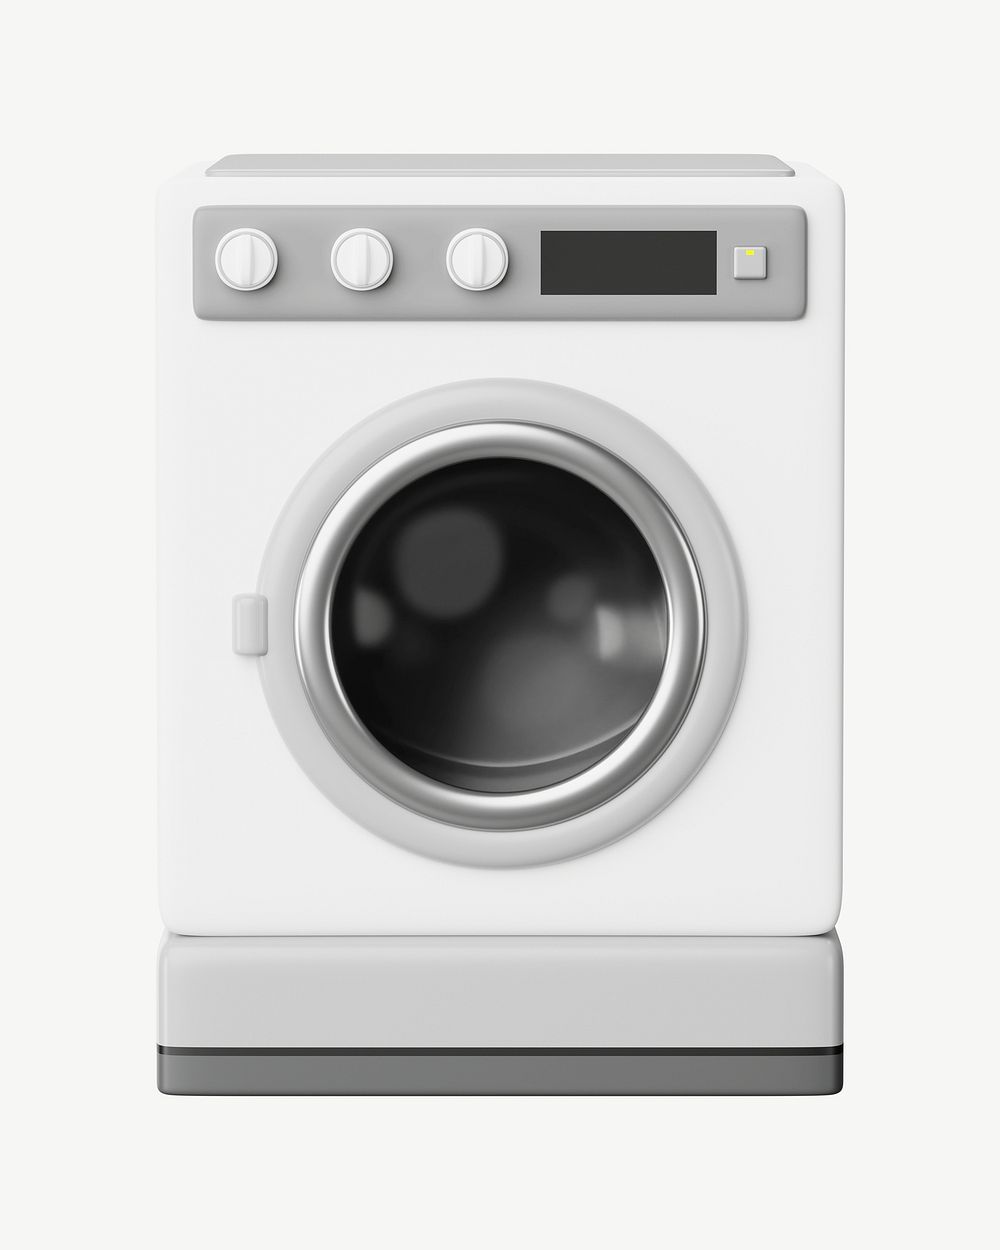 3D washing machine, collage element psd